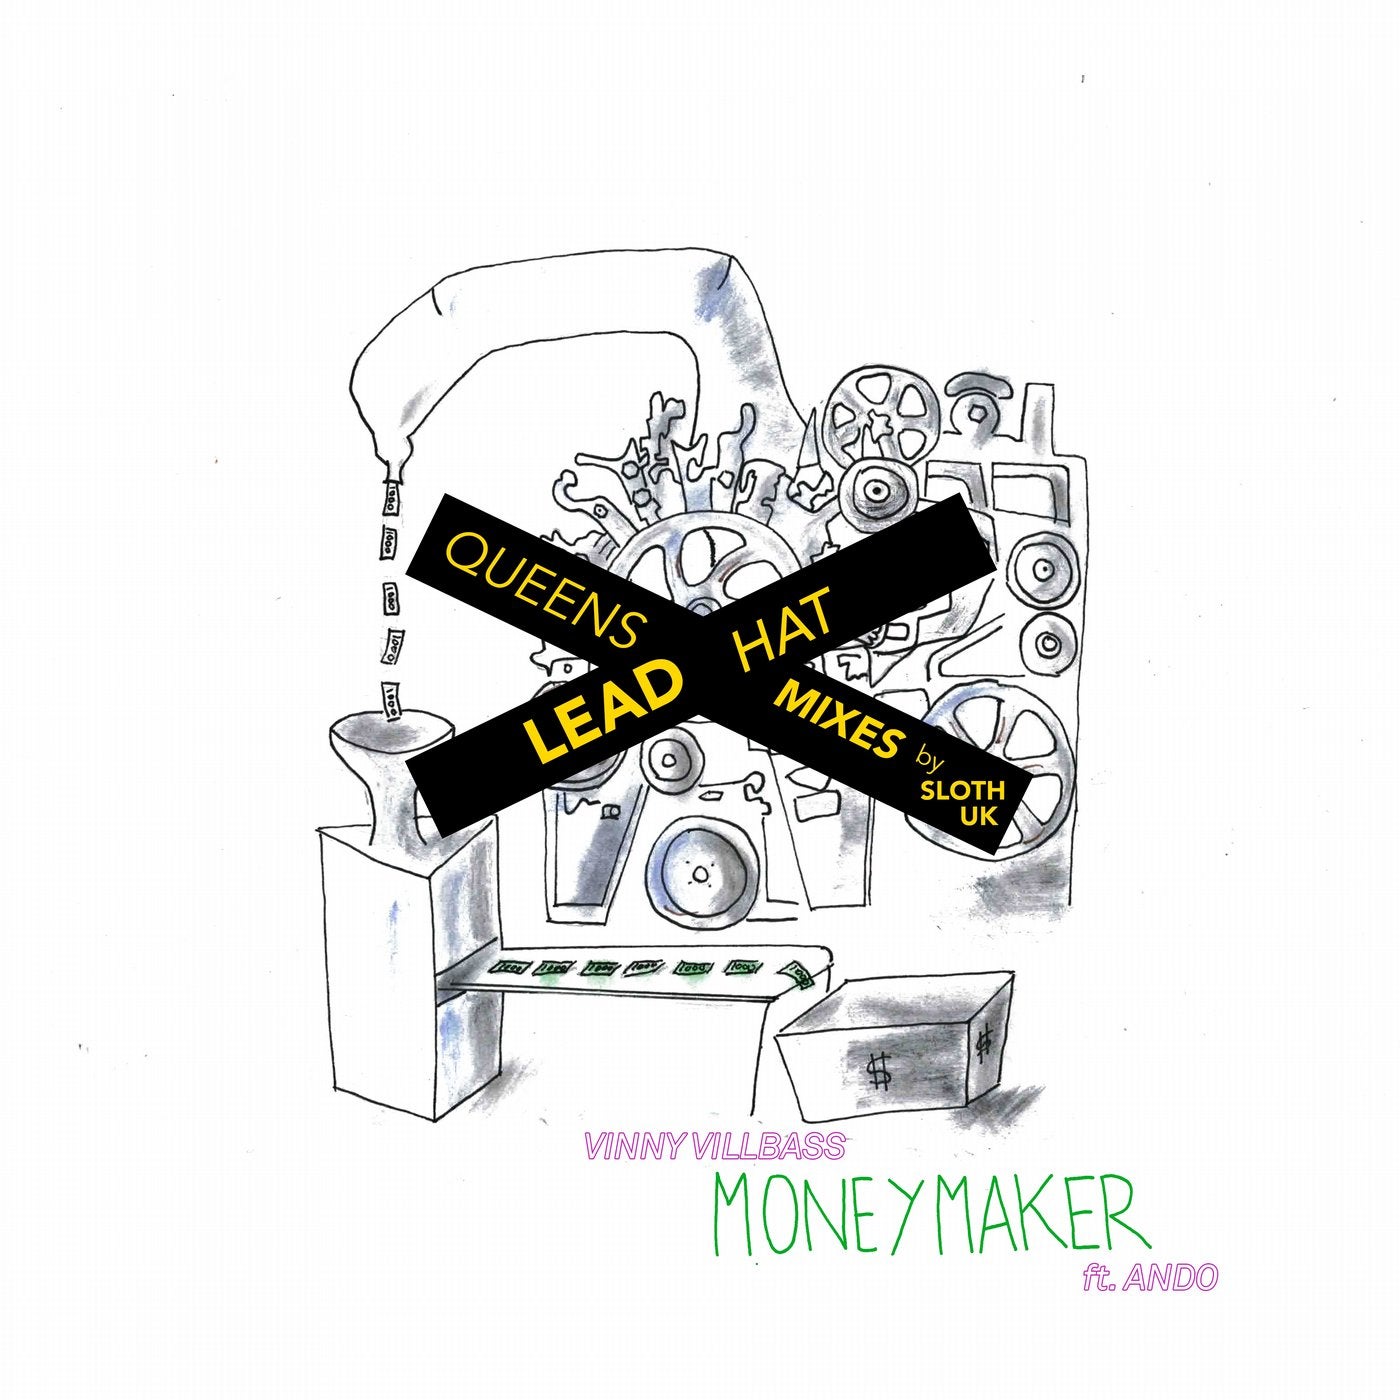 Moneymaker (Queens Lead Hat Mixes)